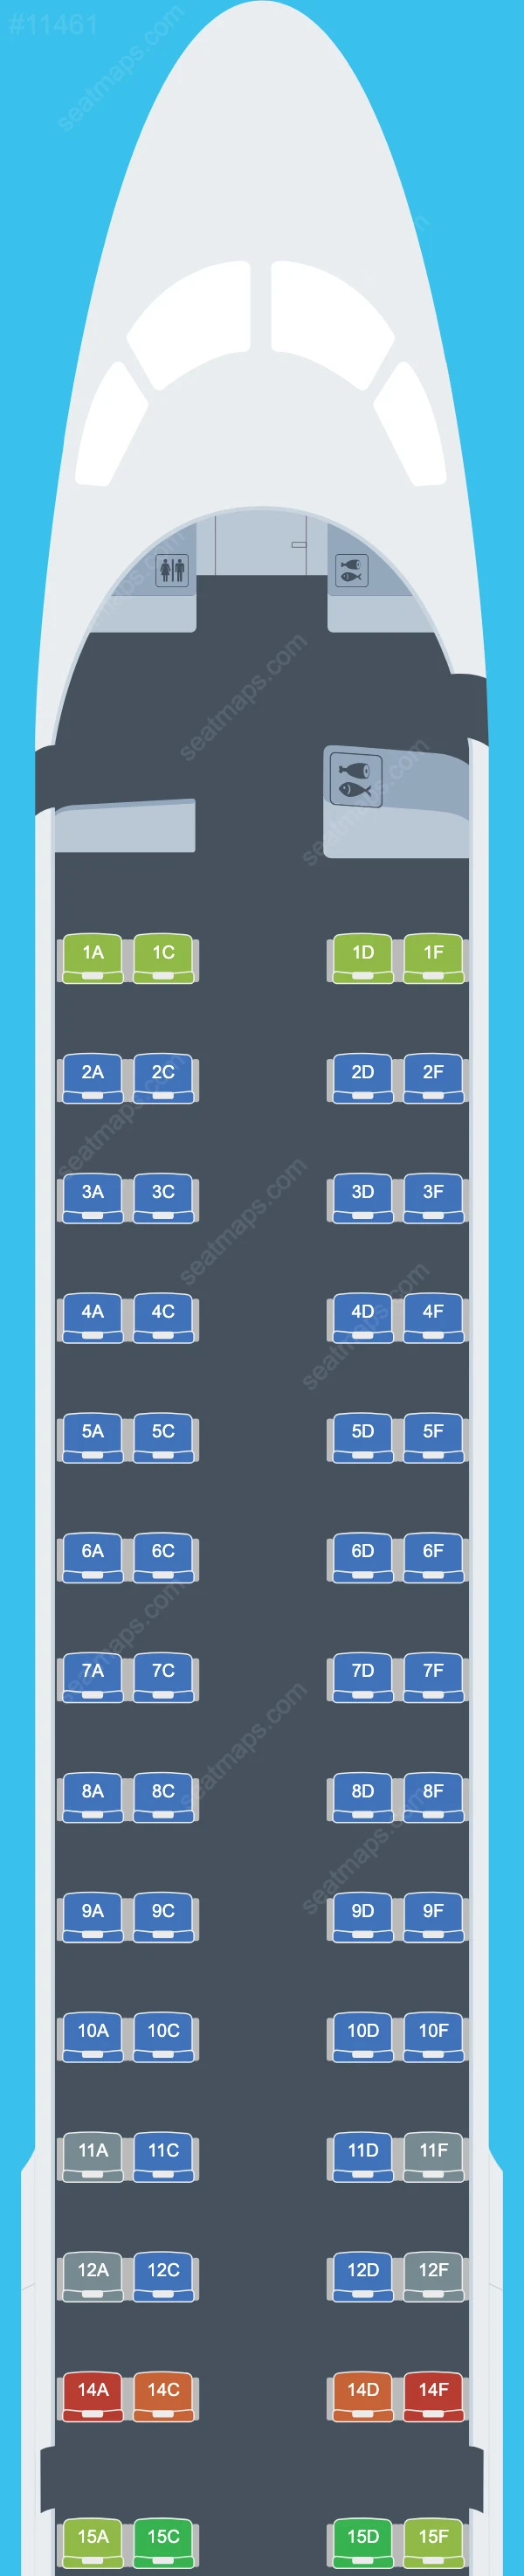 SAS Link Embraer E195 Seat Maps E195 V.2